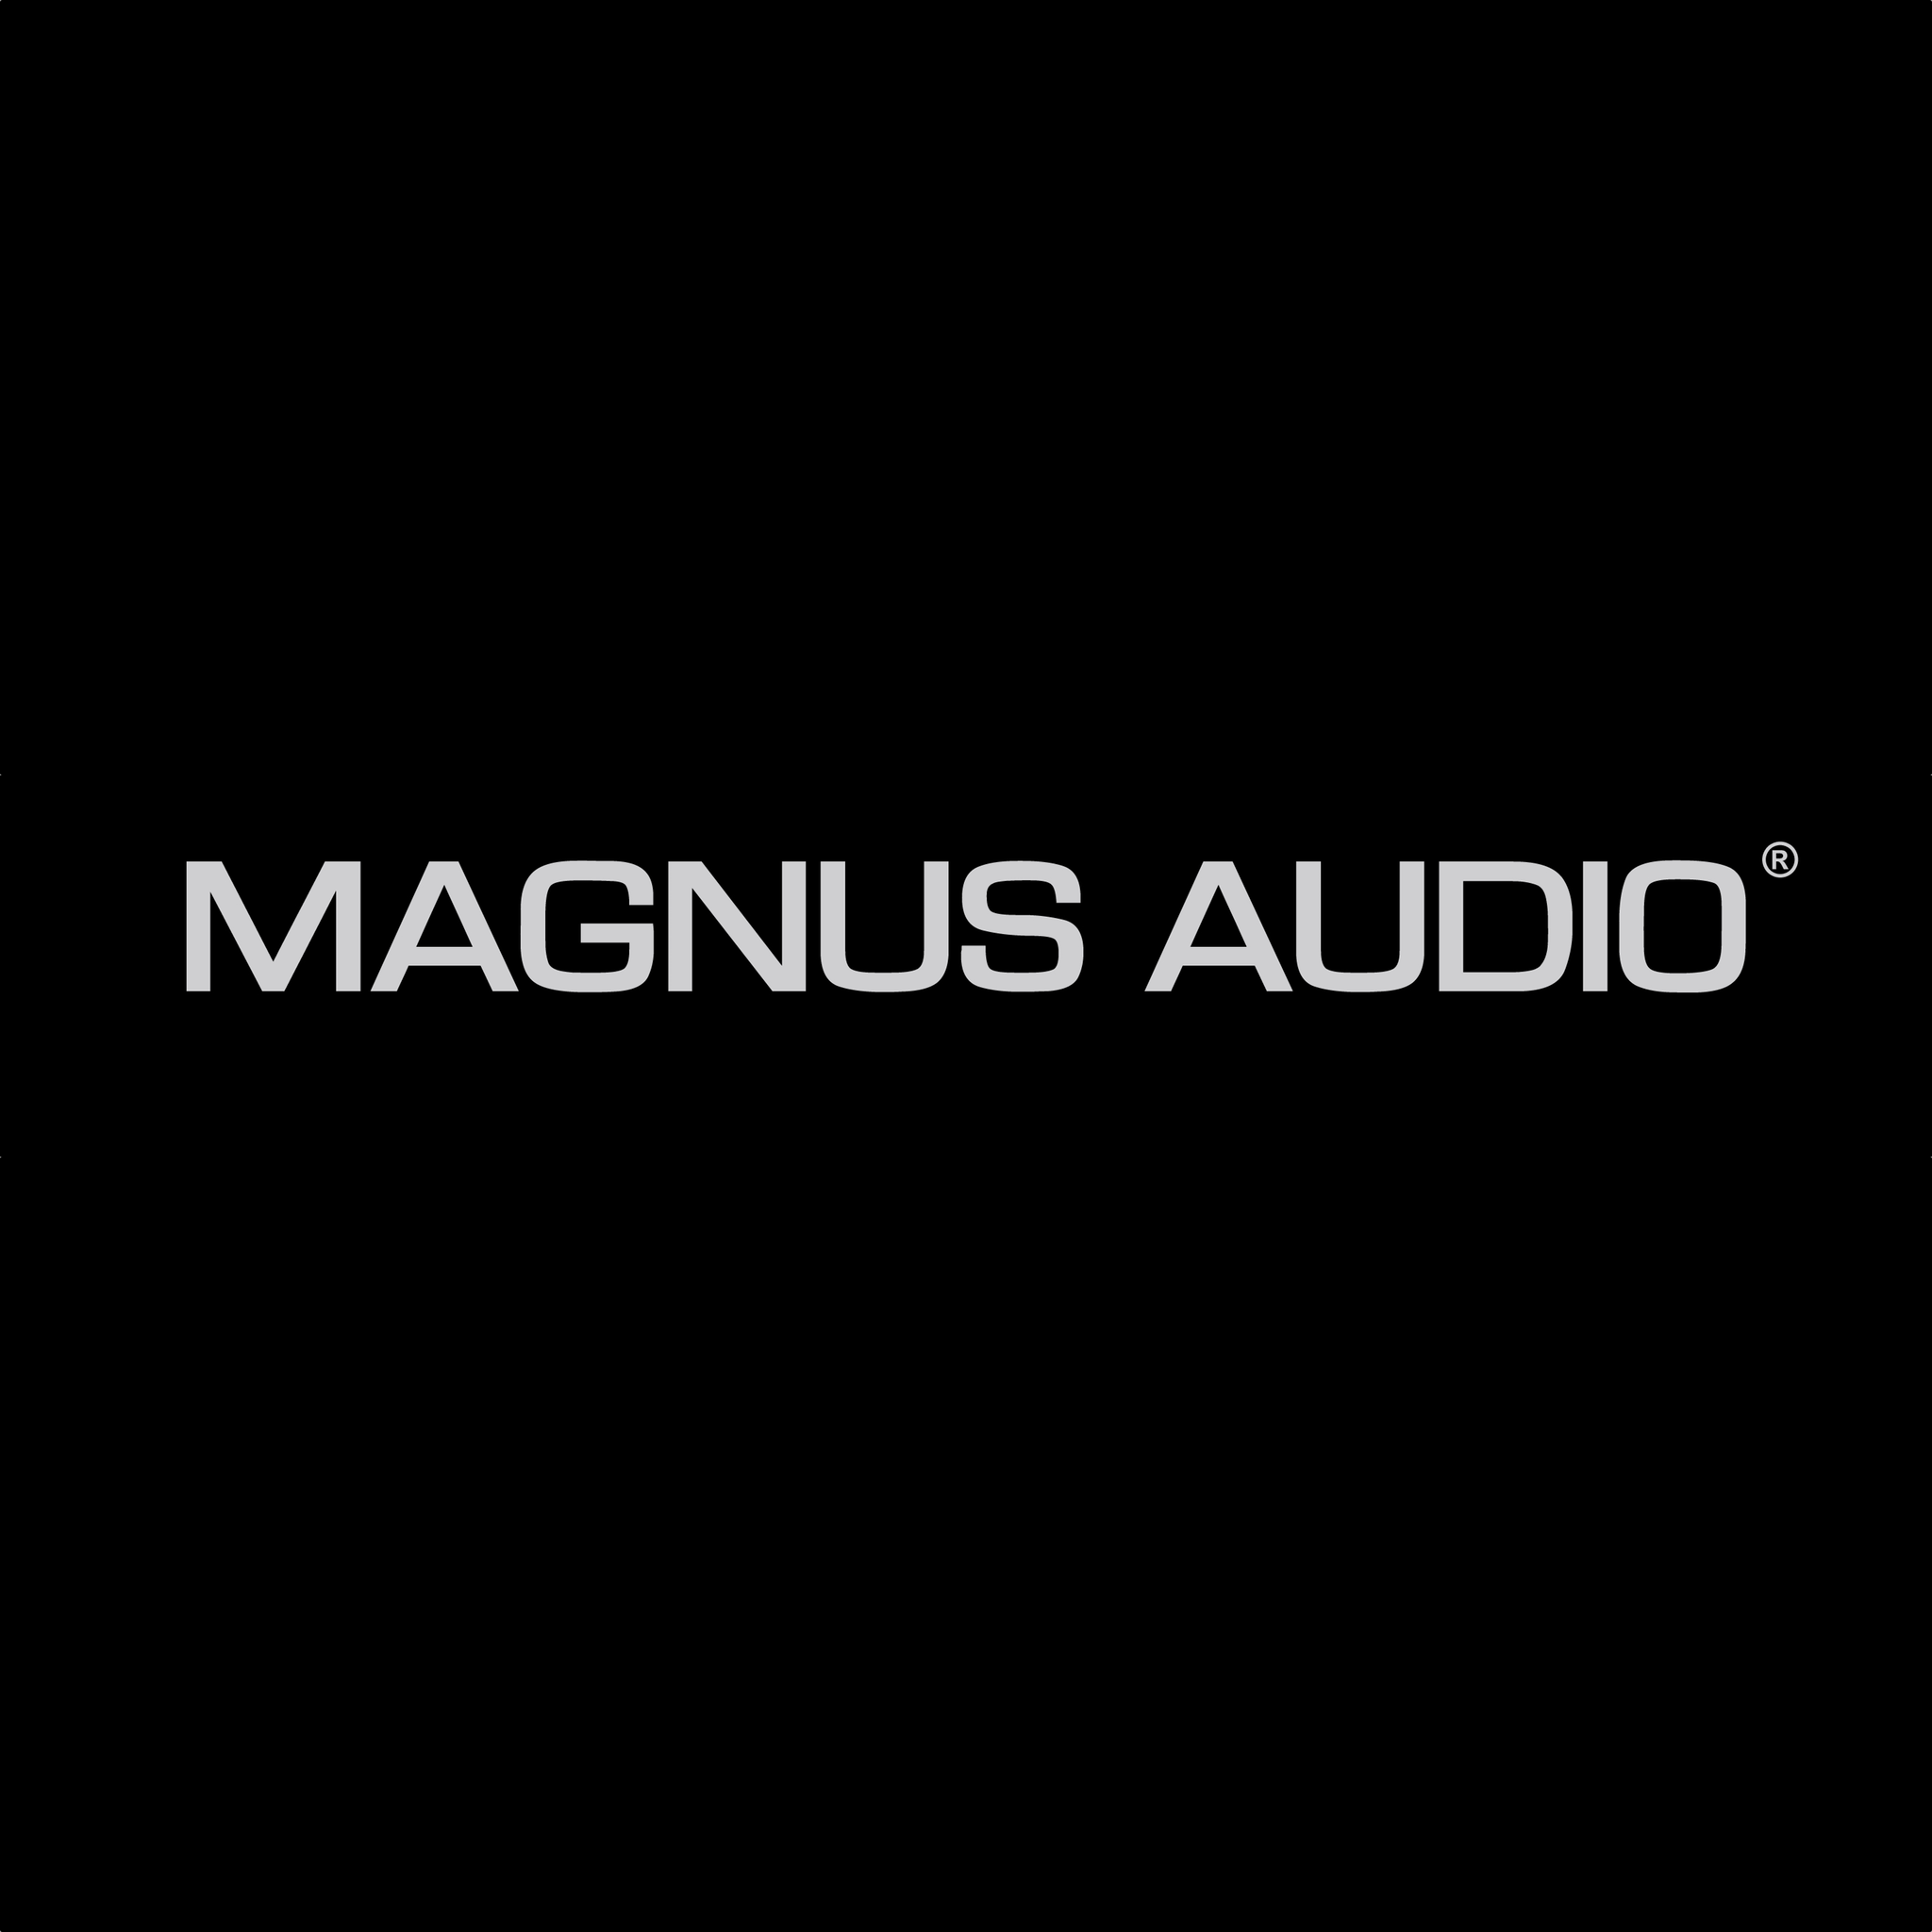 Magnus audio